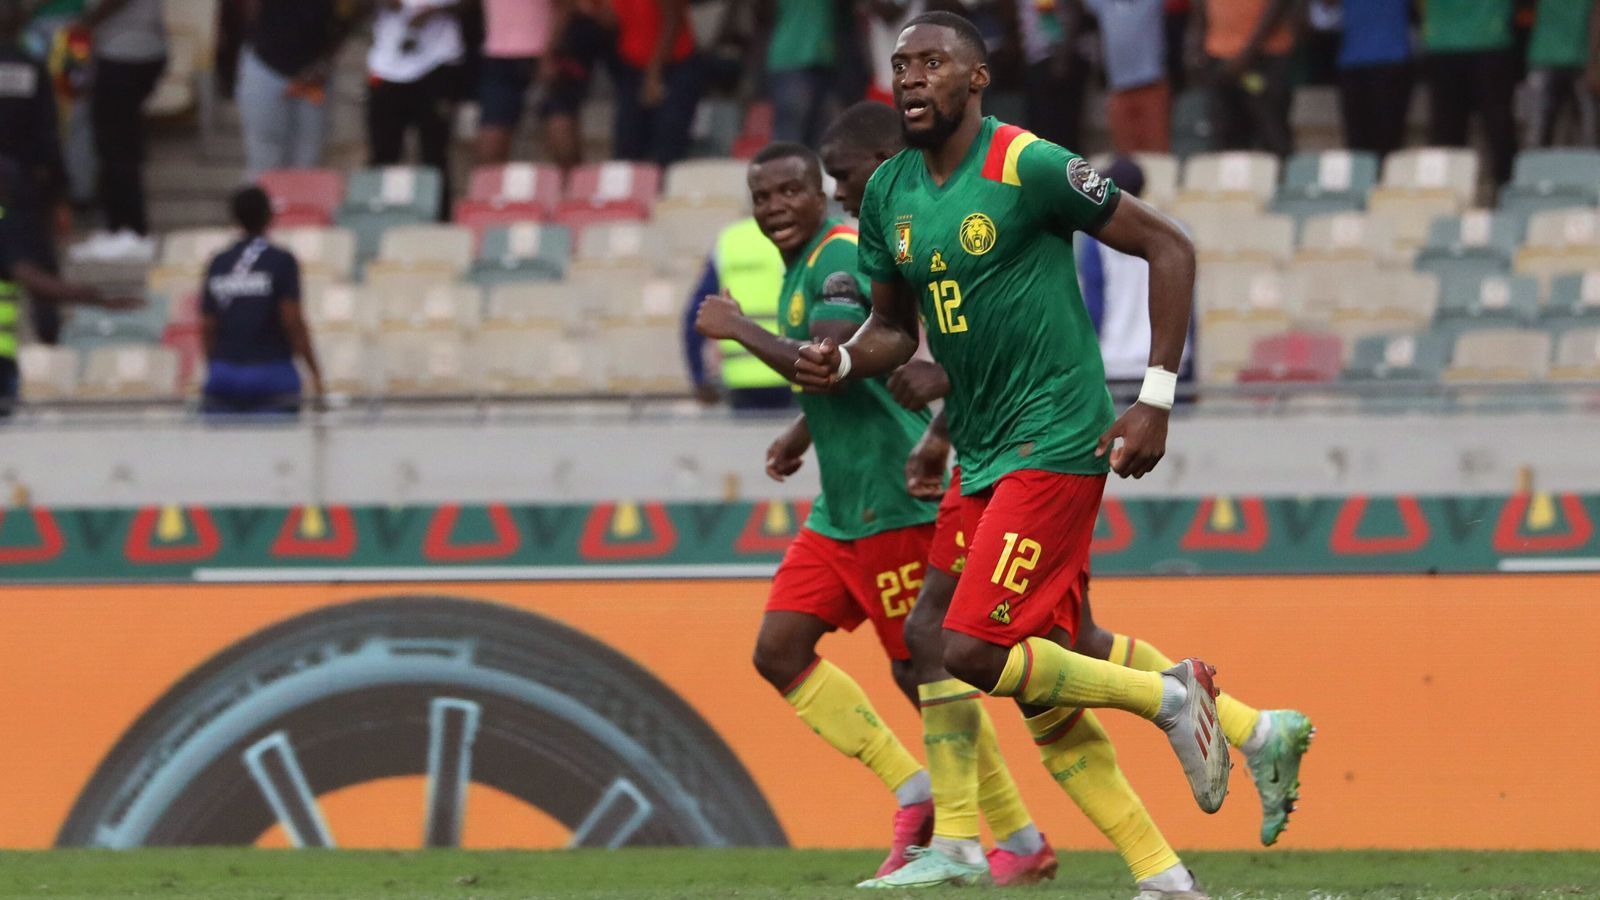 
                <strong>Kamerun</strong><br>
                Die vielleicht dramatischtsten Playoffs erlebte Kamerun. Beim Rückspiel in Algerien ging es in die Verlängerung und dort wurde es richtig verrückt. Zunächst erzielte Algeriens Ahmed Touba in der 118. Minute den 1:1-Ausgleich, wodurch sein Team nach dem 1:0 im Hinspiel zur WM gefahren wäre. Doch das war eben noch nicht der Schlusspunkt. In der vierten Minute der Nachspielzeit der Verlängerung sorgte Karl Toko Ekambi für den umjubelten Treffer zum 2:1 Kameruns und damit auch für die erneute Endrunden-Teilnahme der "unbezähmbaren Löwen".
              